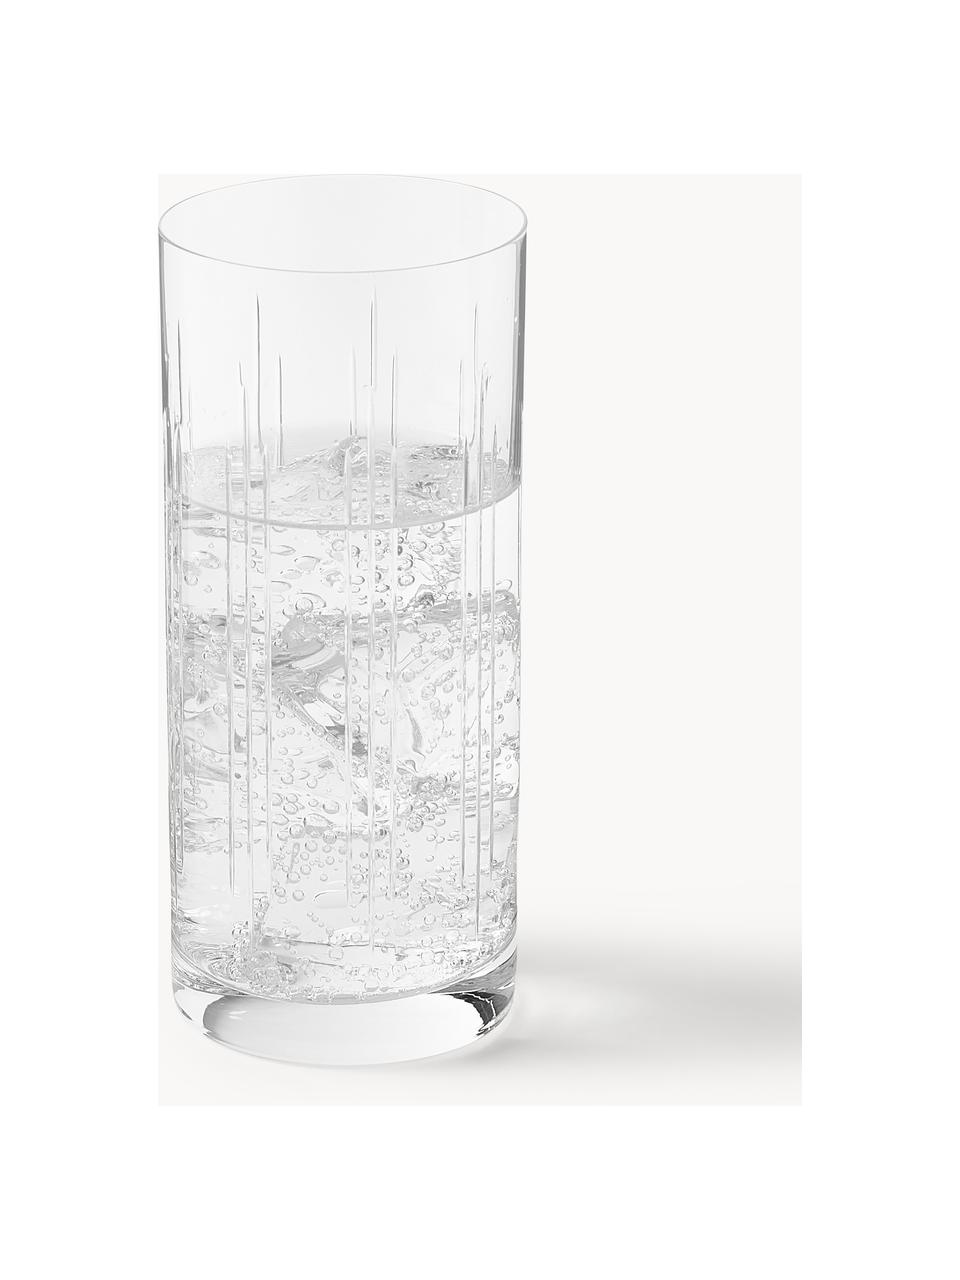 Sklenice na long drink z křišťálového skla Felipe, 4 ks, Křišťálové sklo, Transparentní, Ø 6 cm, V 15 cm, 300 ml